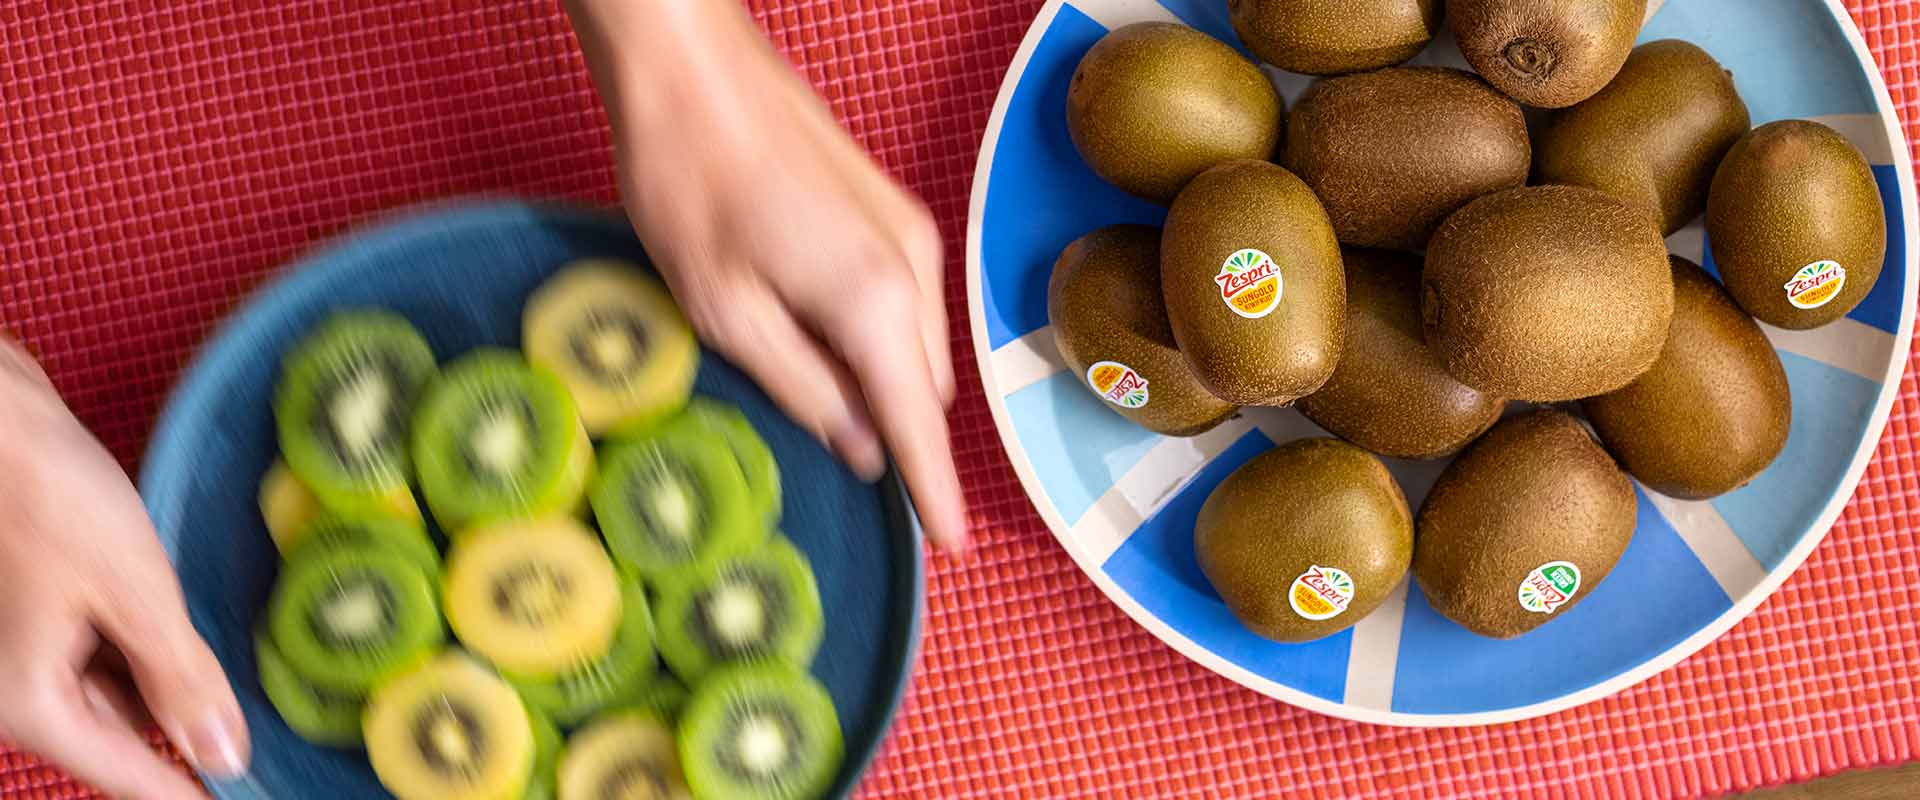 Voordelen van het eten van kiwi's op een lege maag - Header